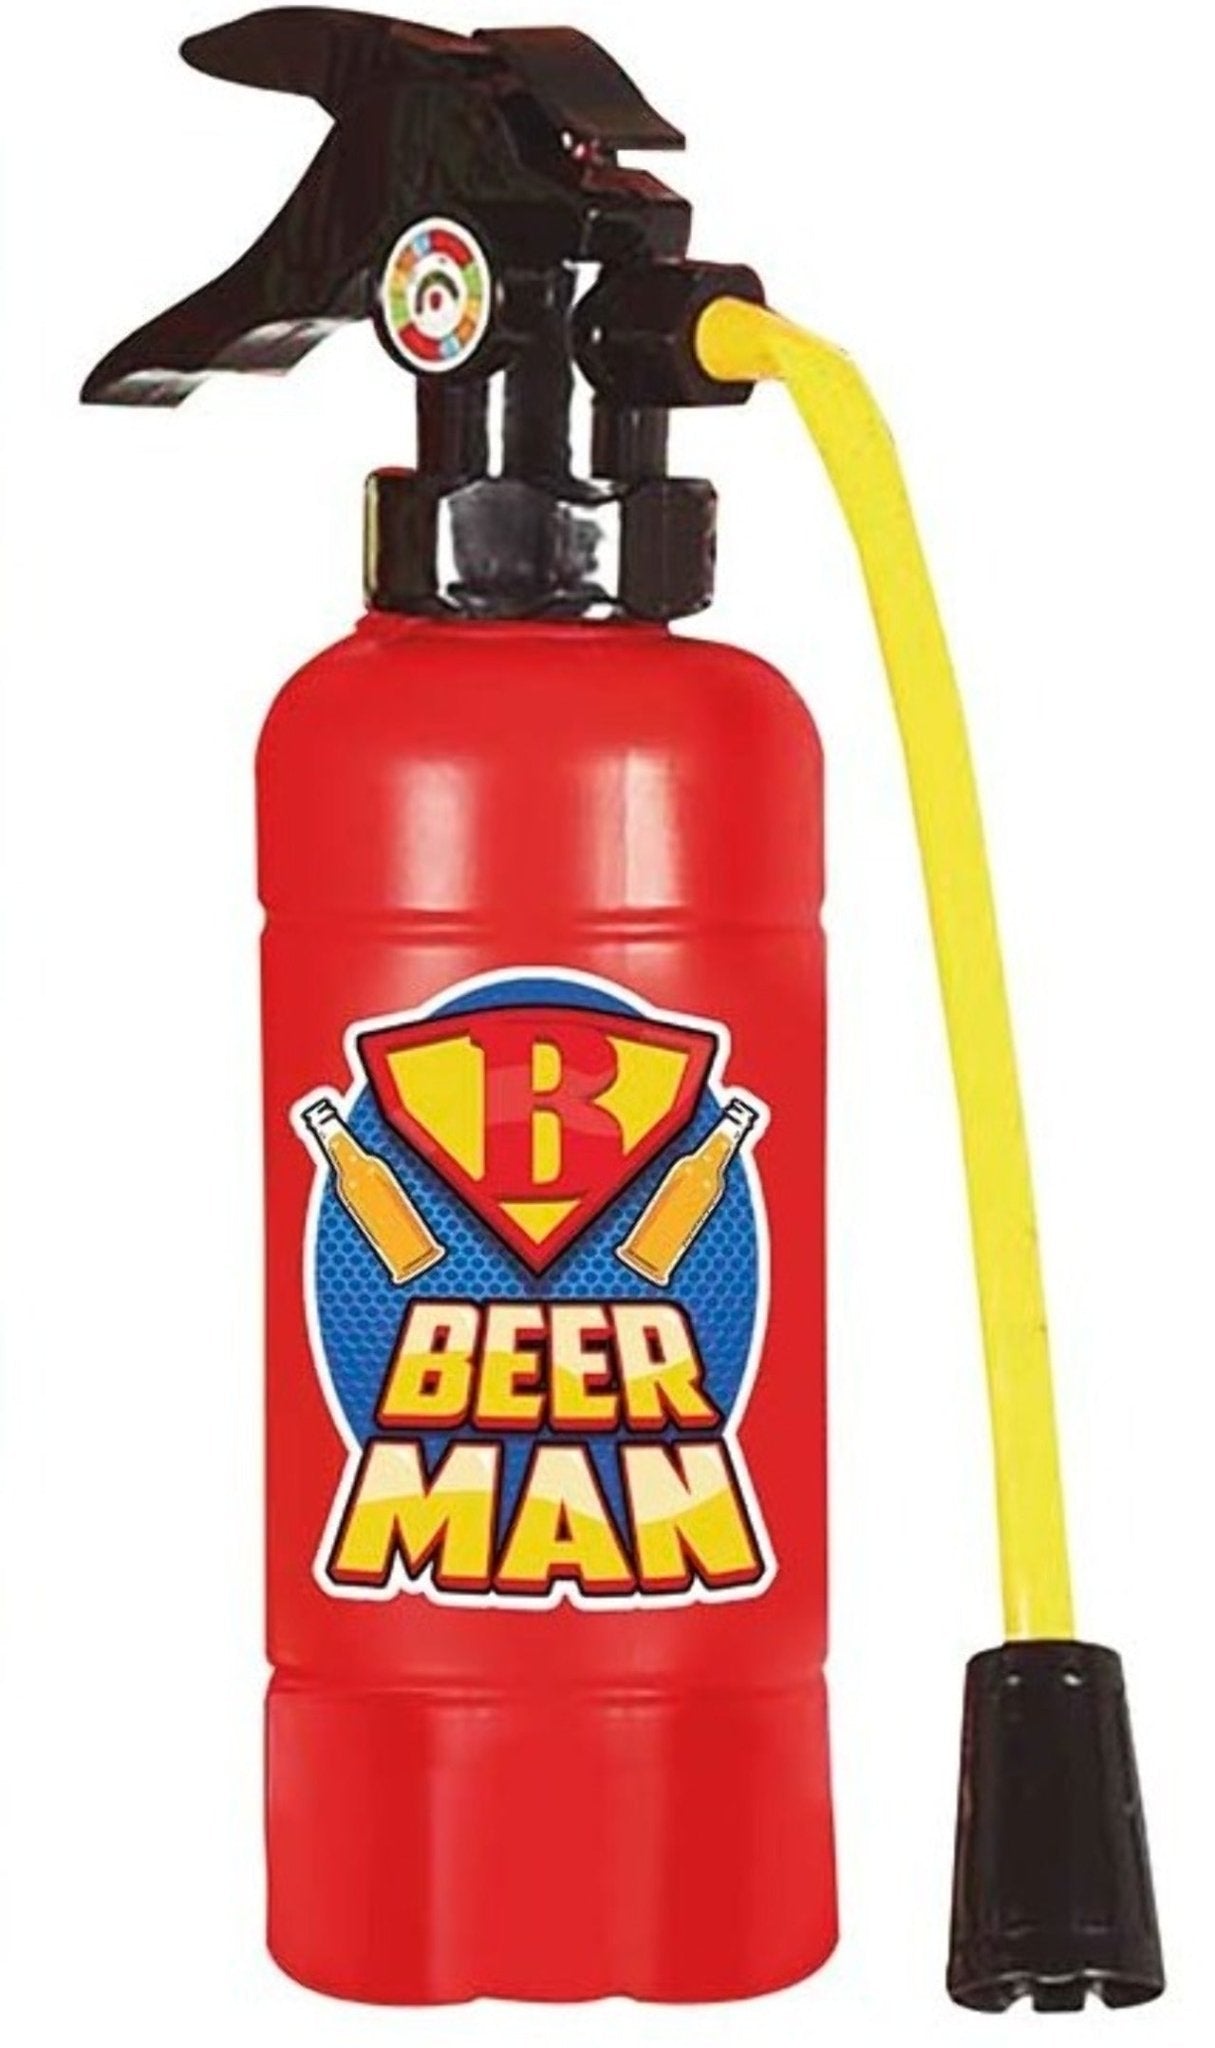 Feuerlöscher für Beerman Drink für Mottopartys